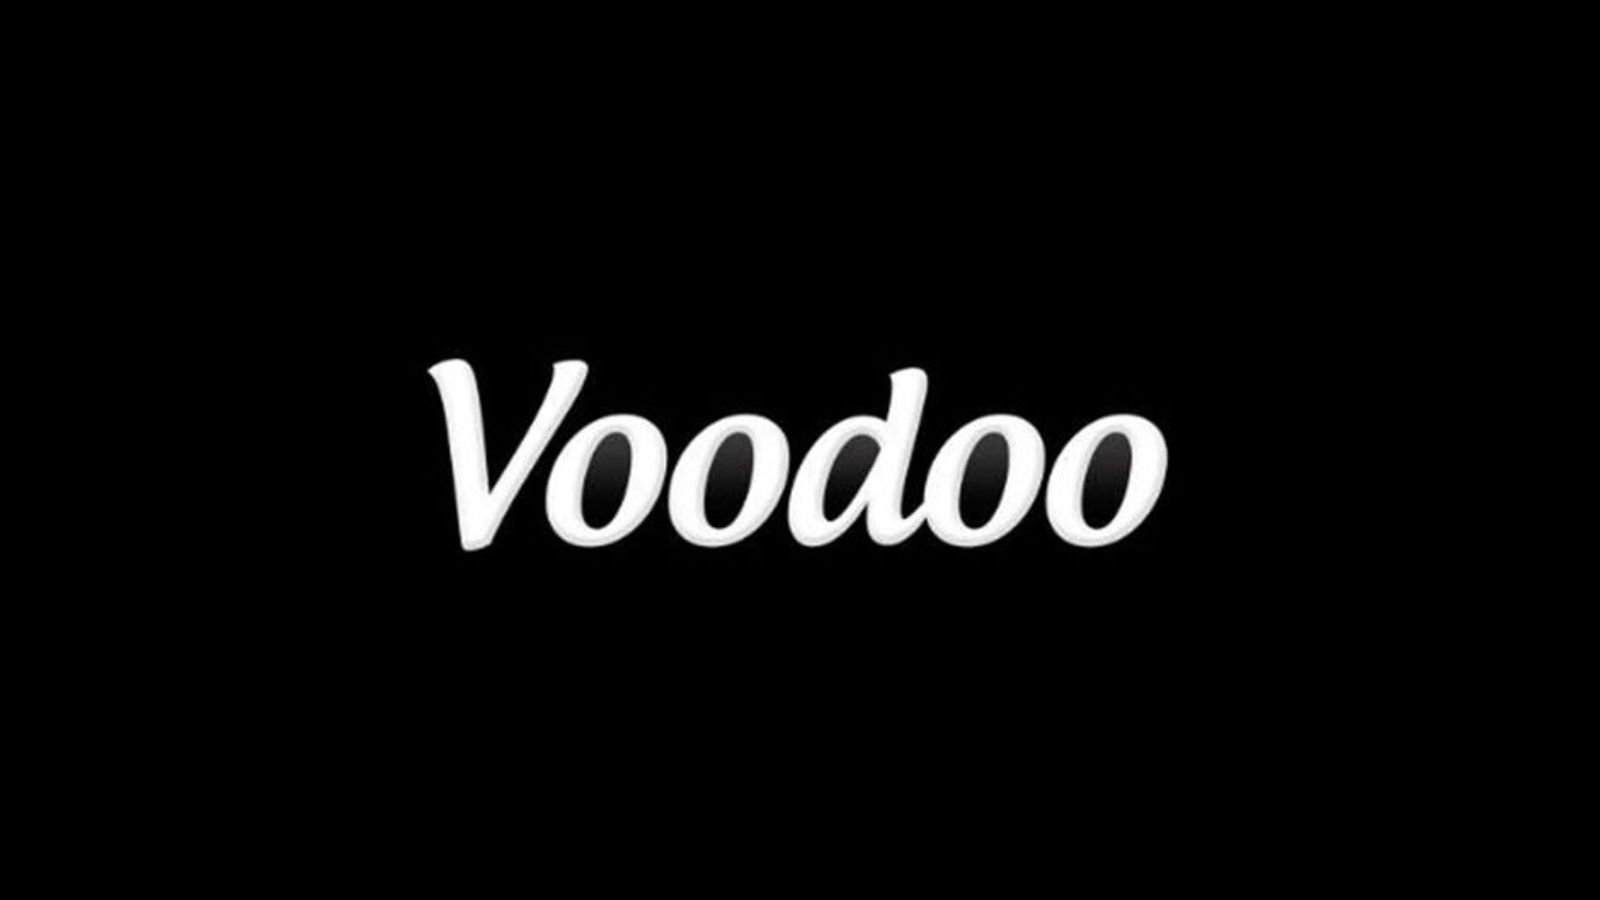 Voodoo, spécialiste du jeu mobile, nouvelle licorne française grâce au géant Tencent